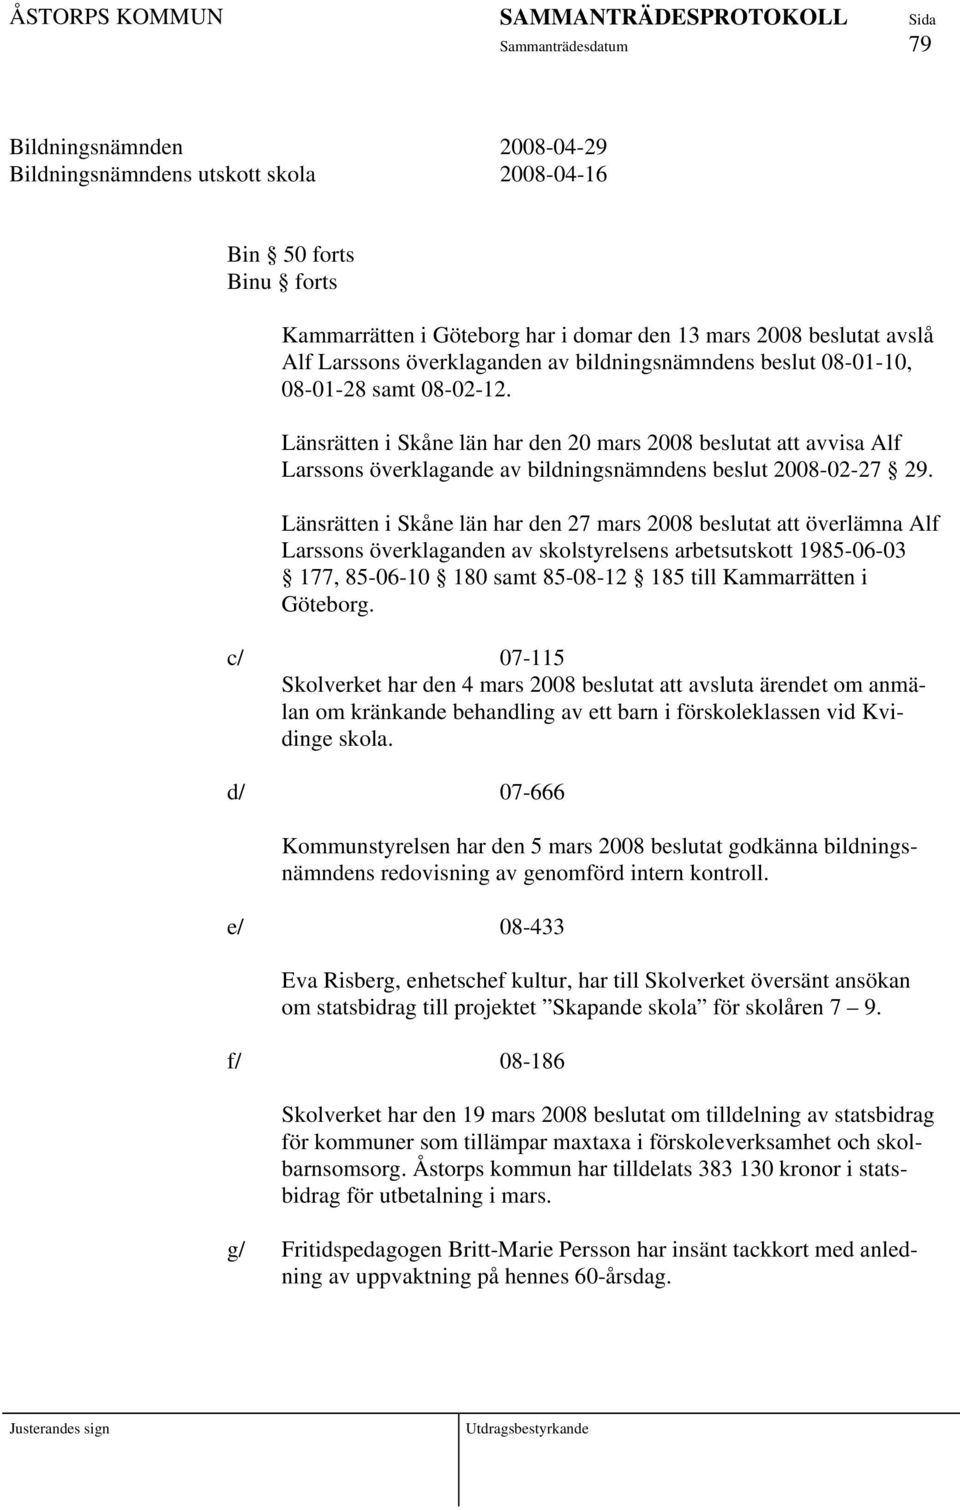 Länsrätten i Skåne län har den 27 mars 2008 beslutat att överlämna Alf Larssons överklaganden av skolstyrelsens arbetsutskott 1985-06-03 177, 85-06-10 180 samt 85-08-12 185 till Kammarrätten i